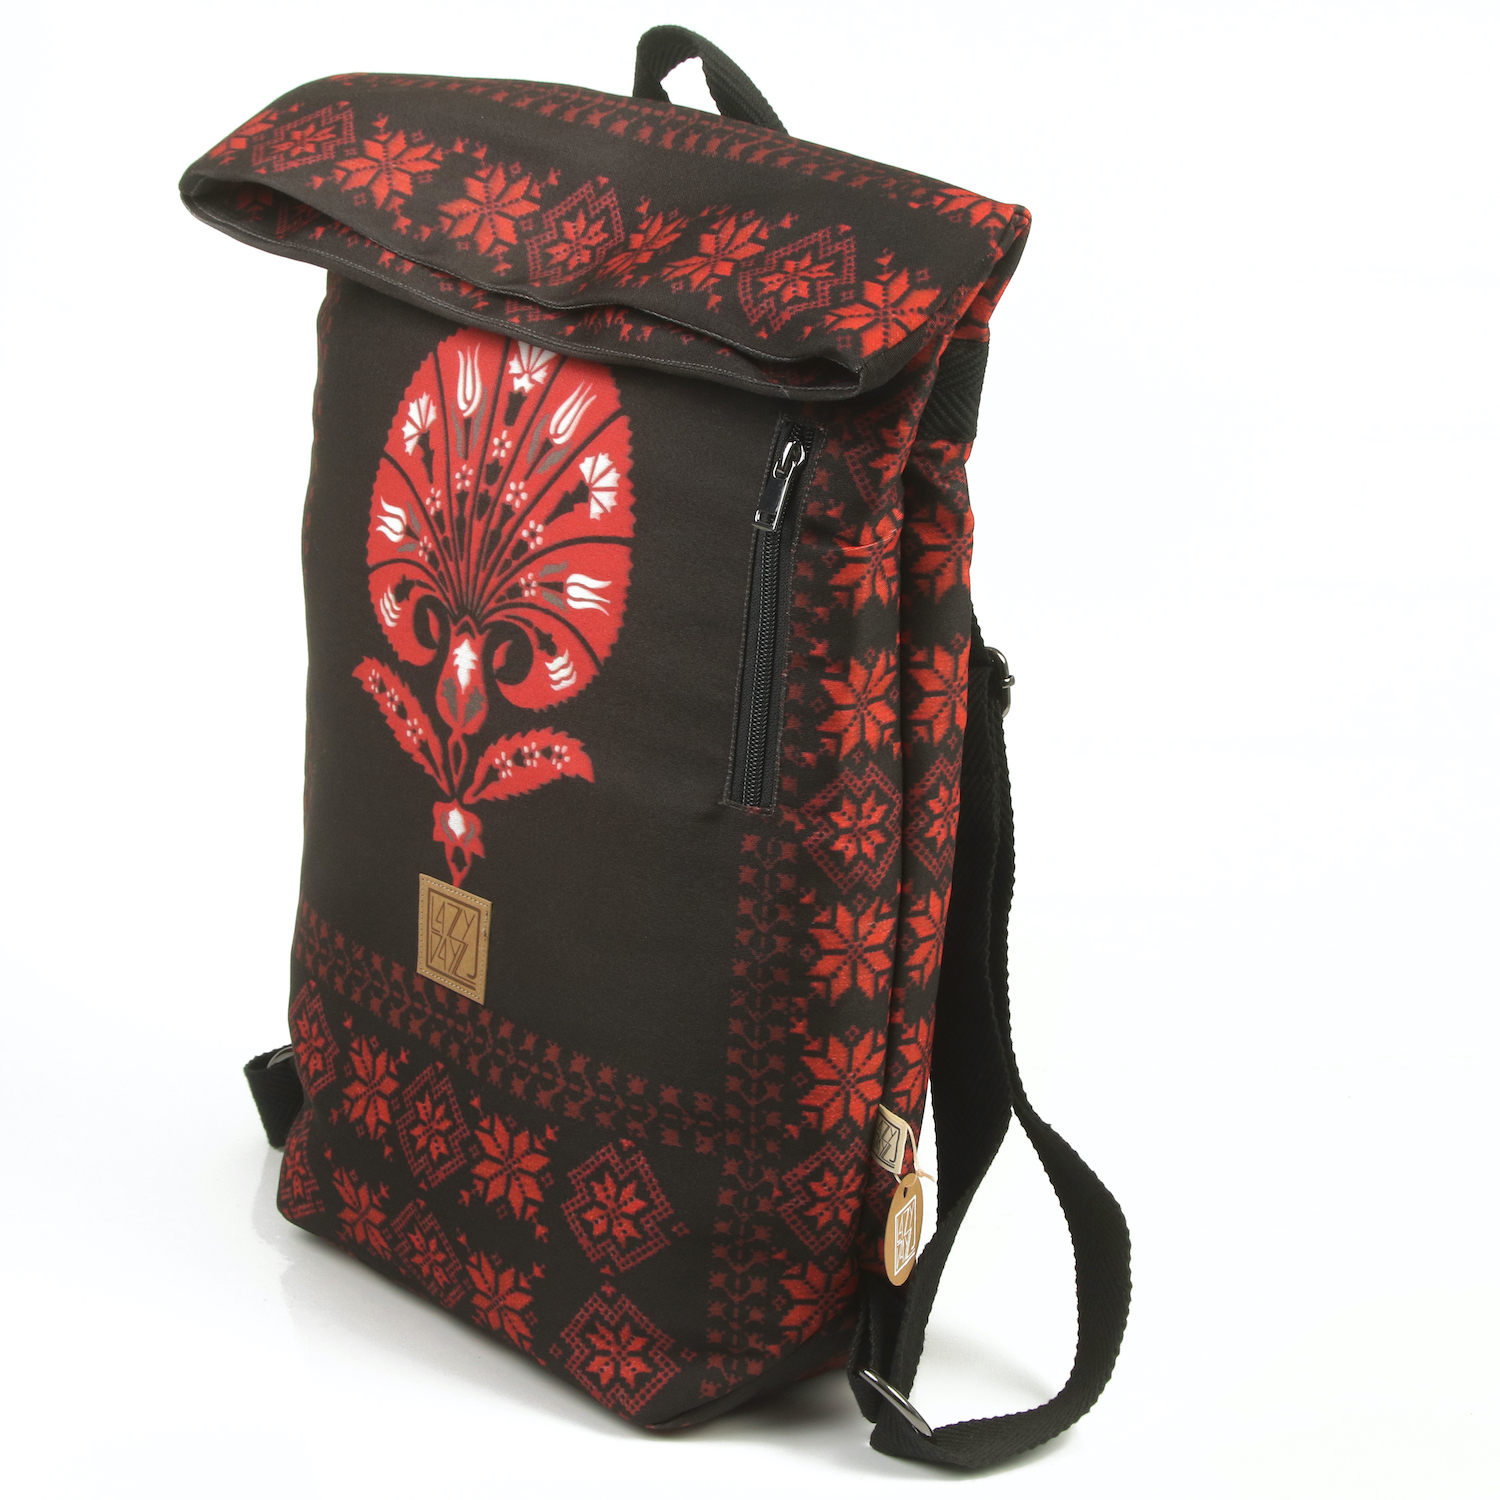 LazyDayz Designs Backpack γυναικείος σάκος πλάτης χειροποίητος bb0802b